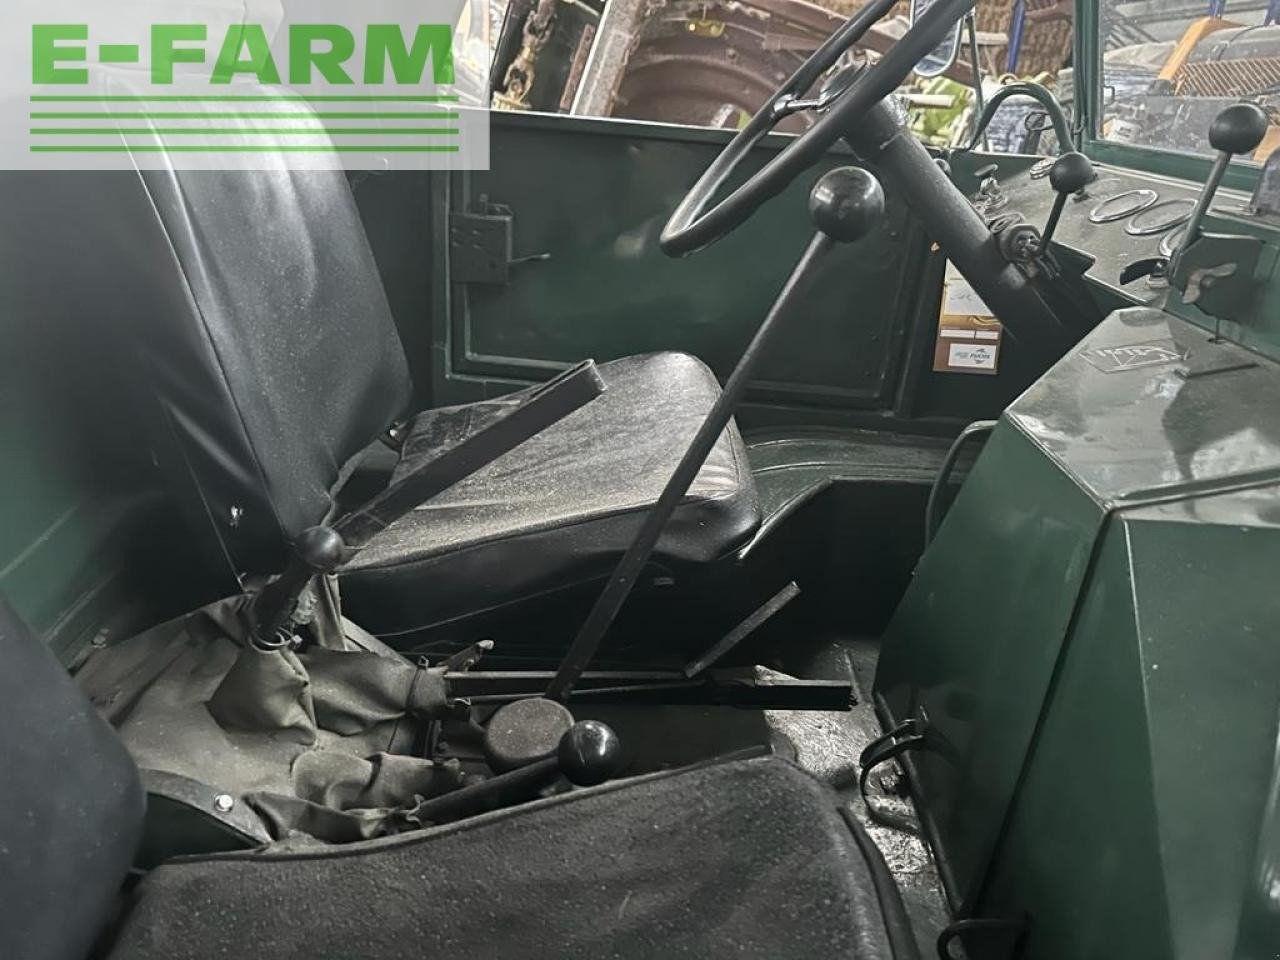 Farm tractor Mercedes-Benz u411 agrar heckhydraulik 2dw bj65: picture 17